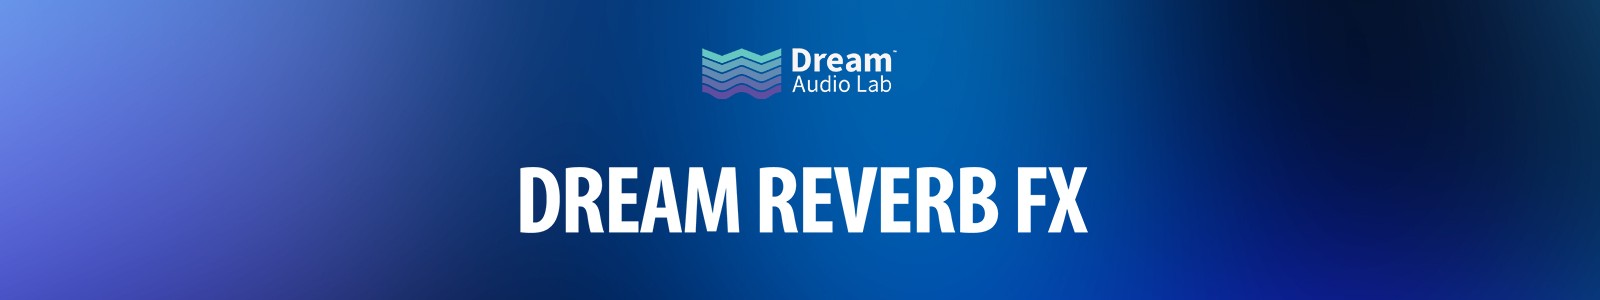 Dream Audio Lab Dream Reverb FX